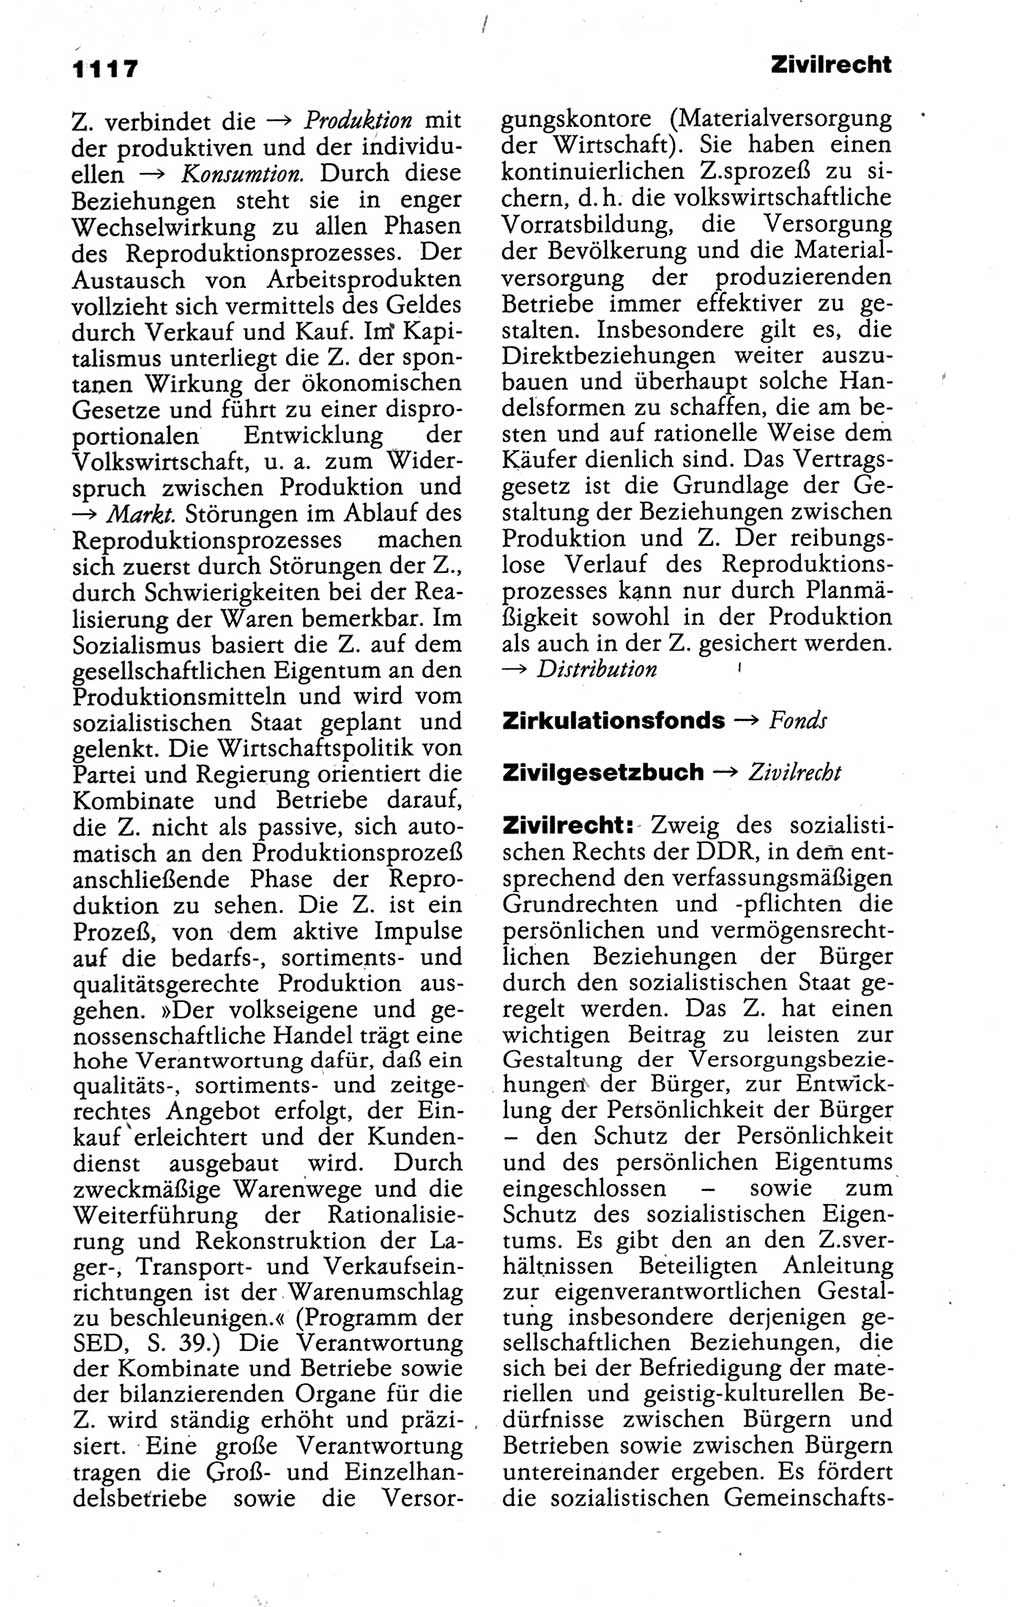 Kleines politisches Wörterbuch [Deutsche Demokratische Republik (DDR)] 1988, Seite 1117 (Kl. pol. Wb. DDR 1988, S. 1117)